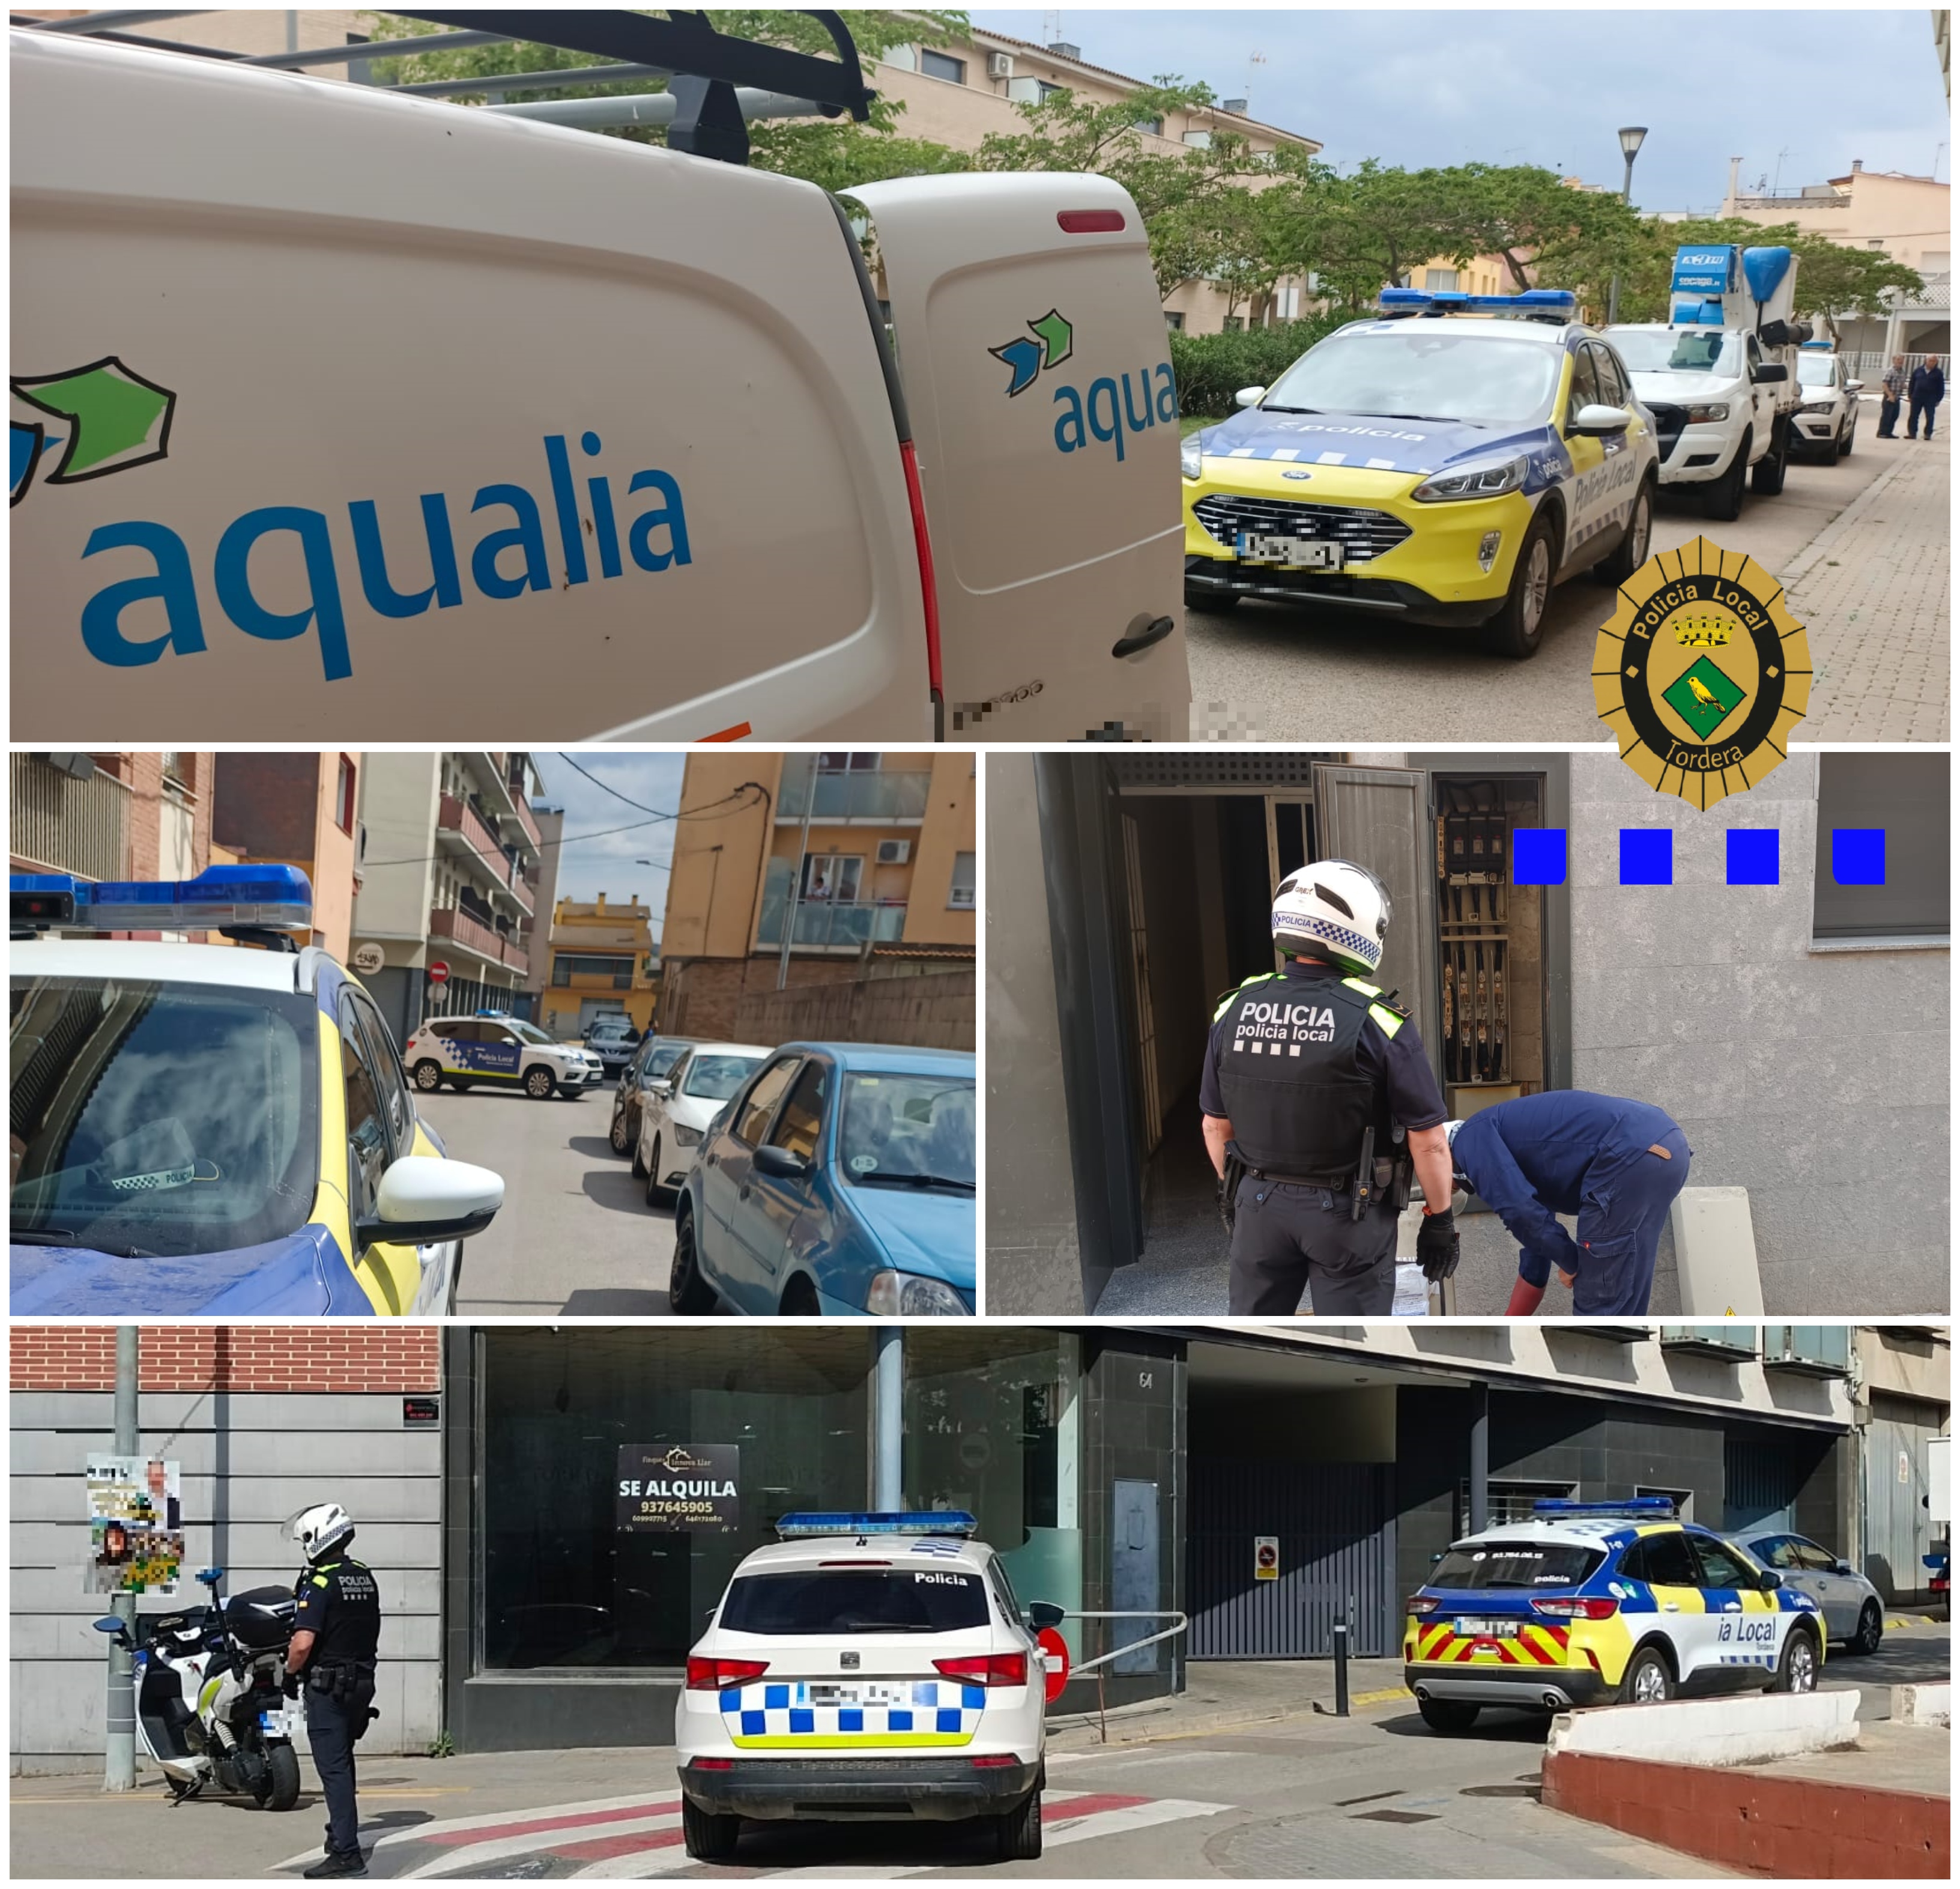 La Policia local de Tordera, Endesa i Aquàlia continuen els operatius contra la defraudació de llum i aigua al municipi